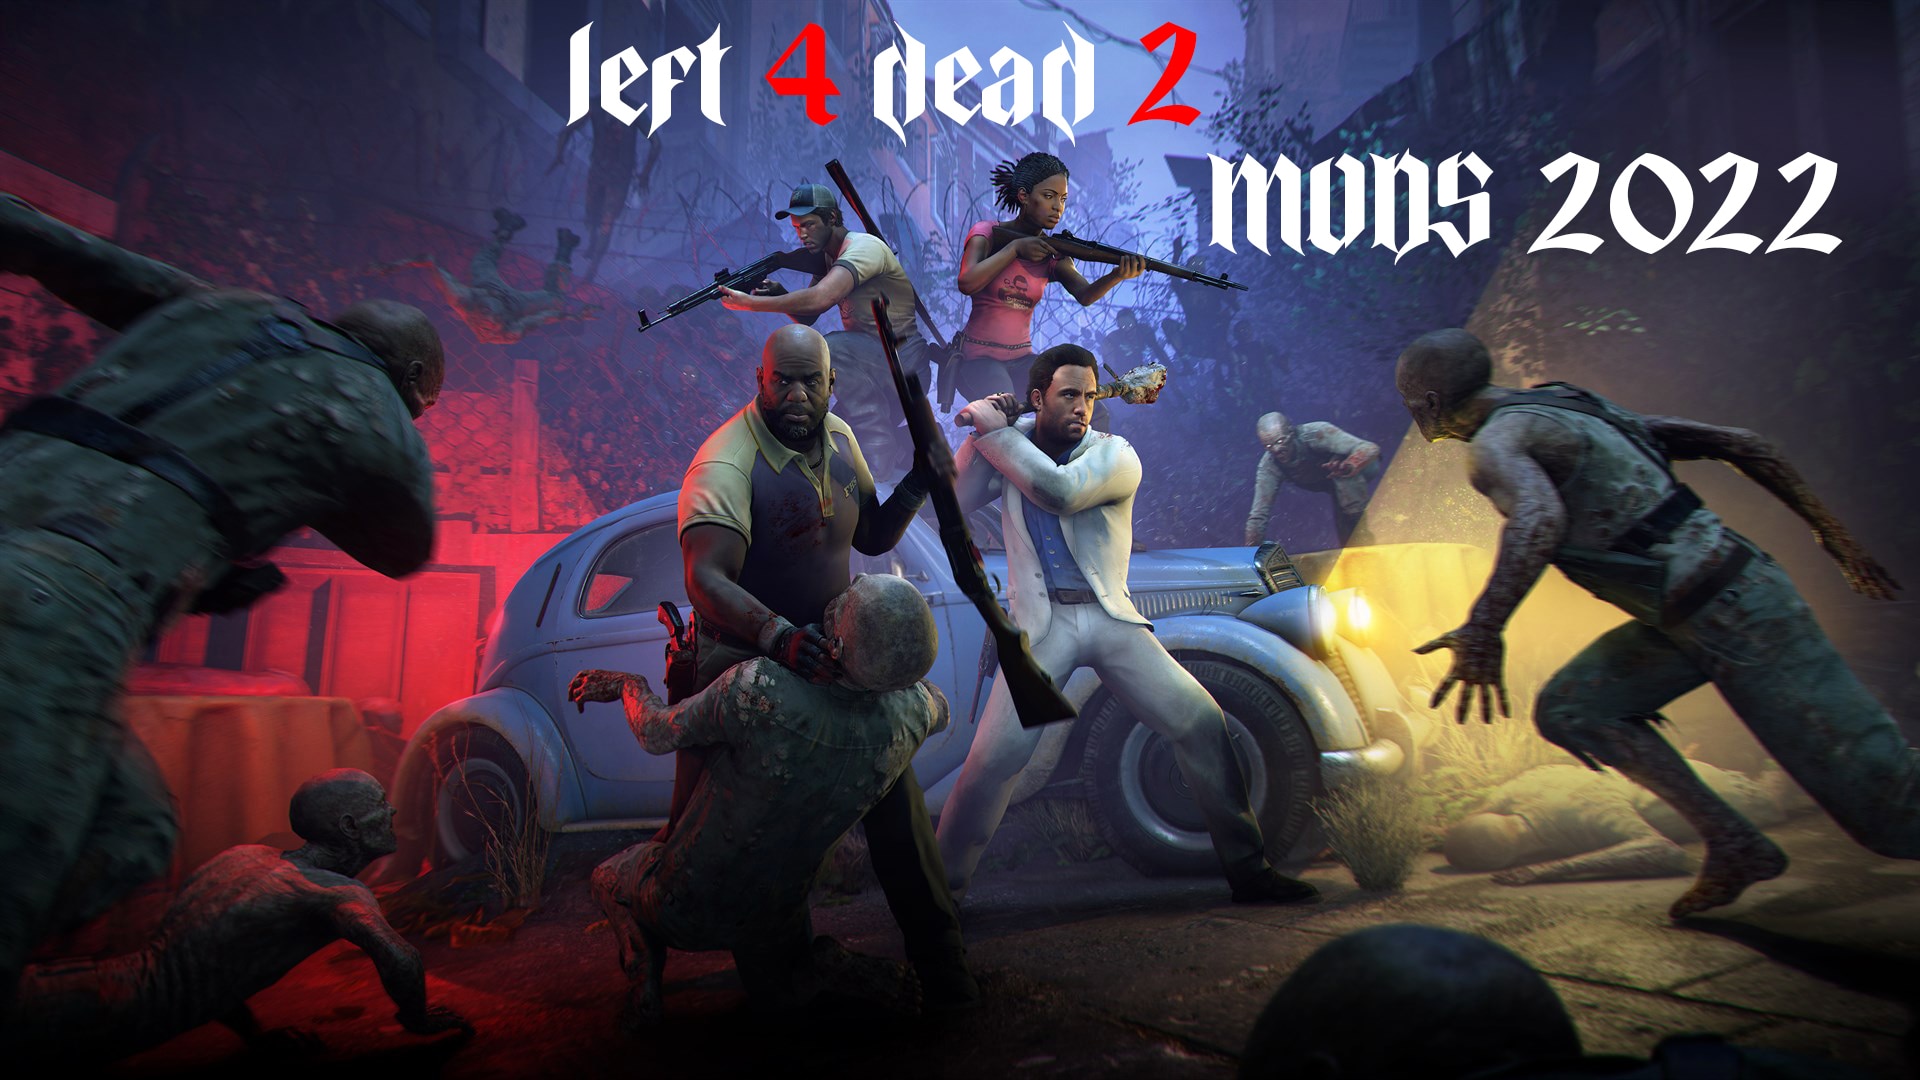 Download 'evil dead' Mods for Left 4 Dead 2 